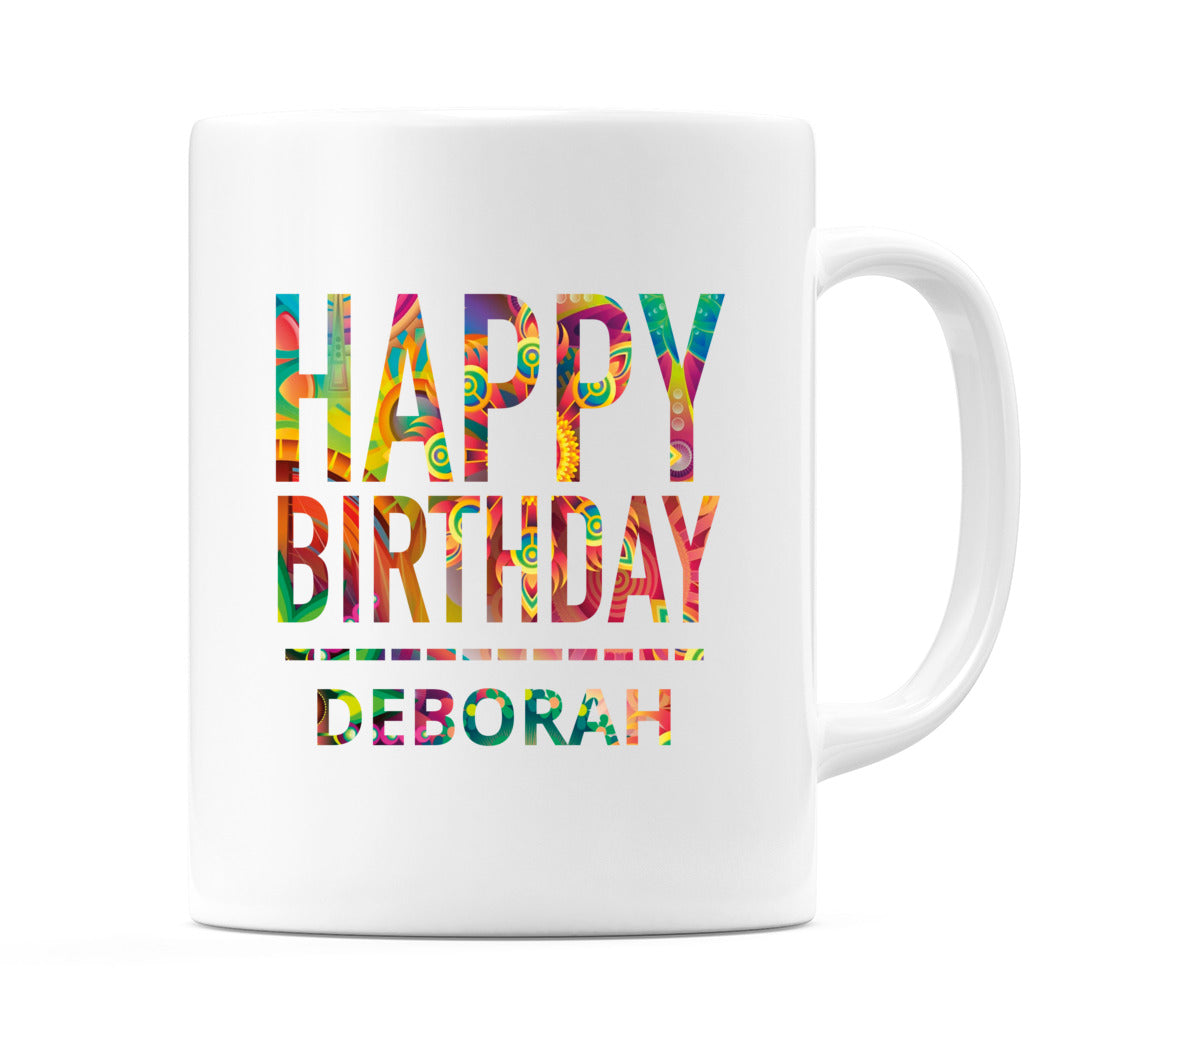 Happy Birthday Deborah (Tie Dye Effect) Mug Cup by WeDoMugs